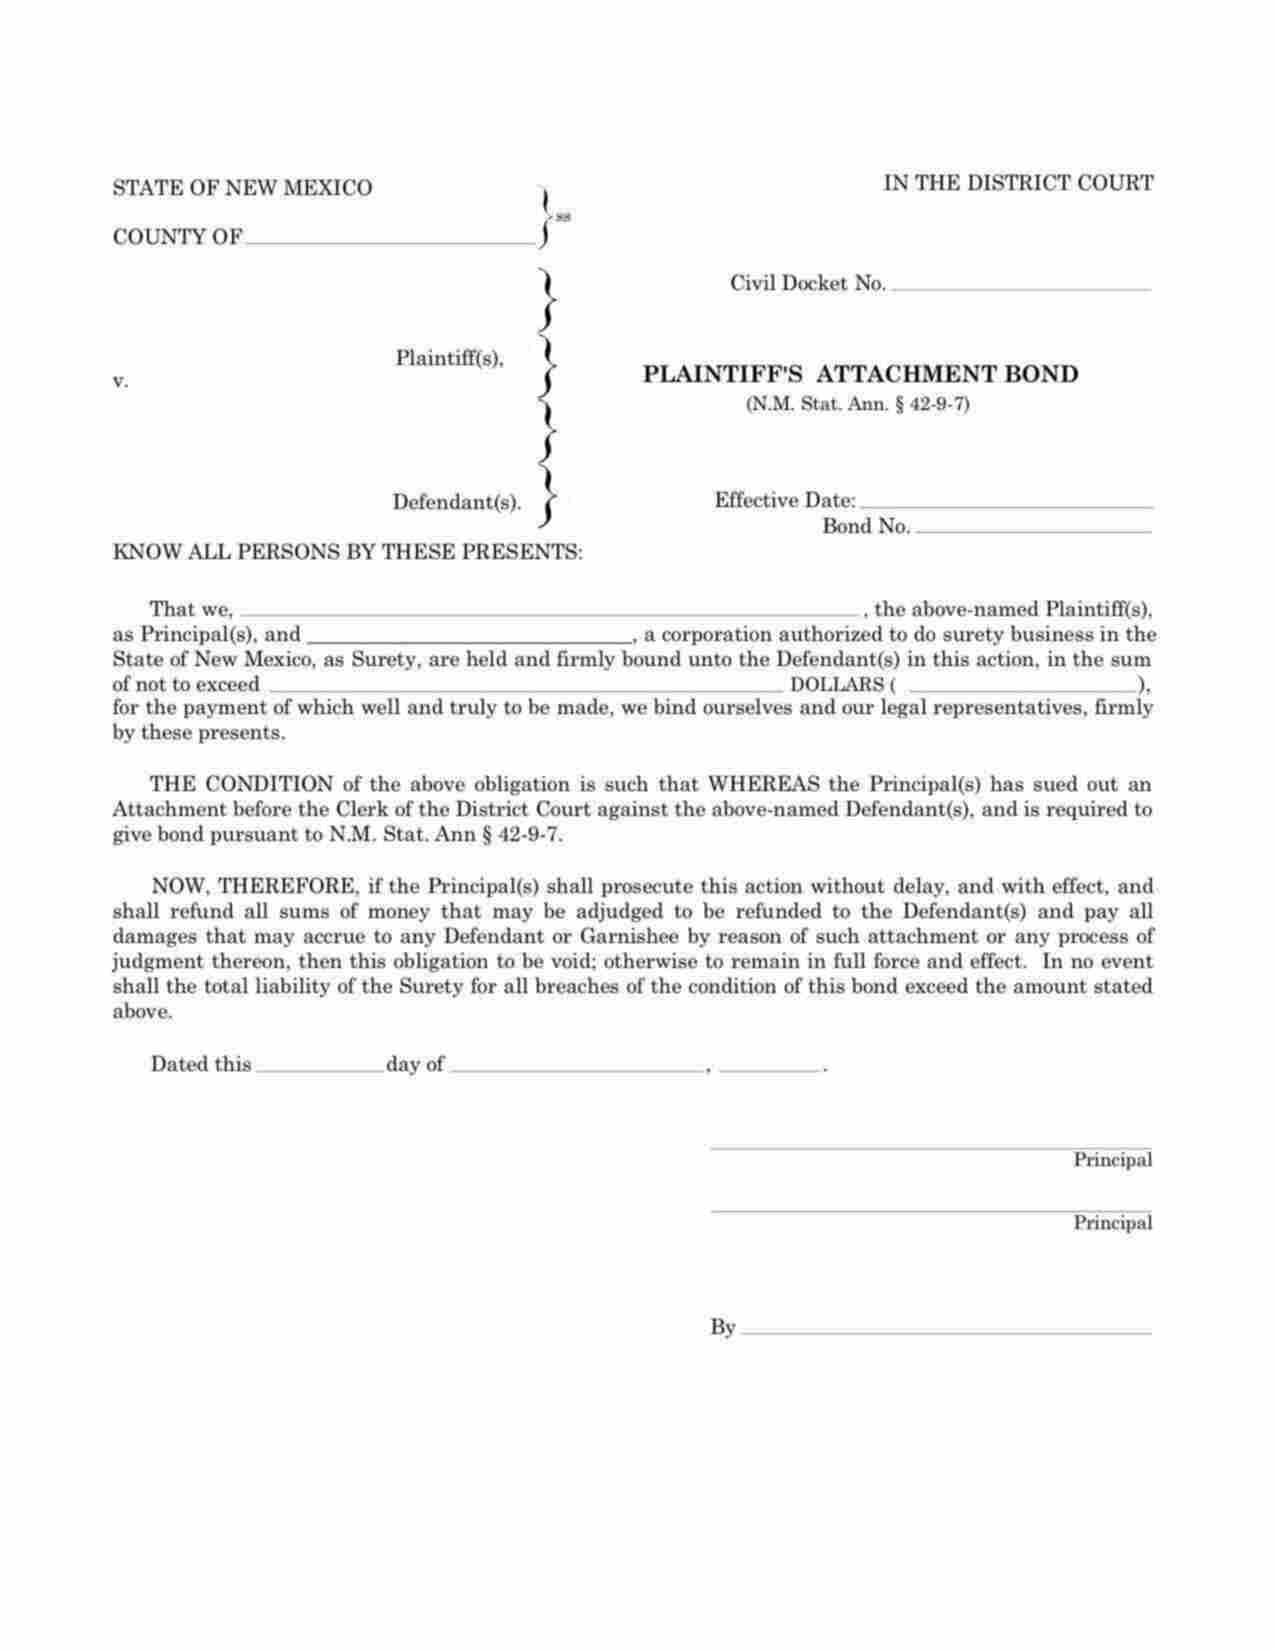 New Mexico Plaintiffs Attachment (District Court) Bond Form